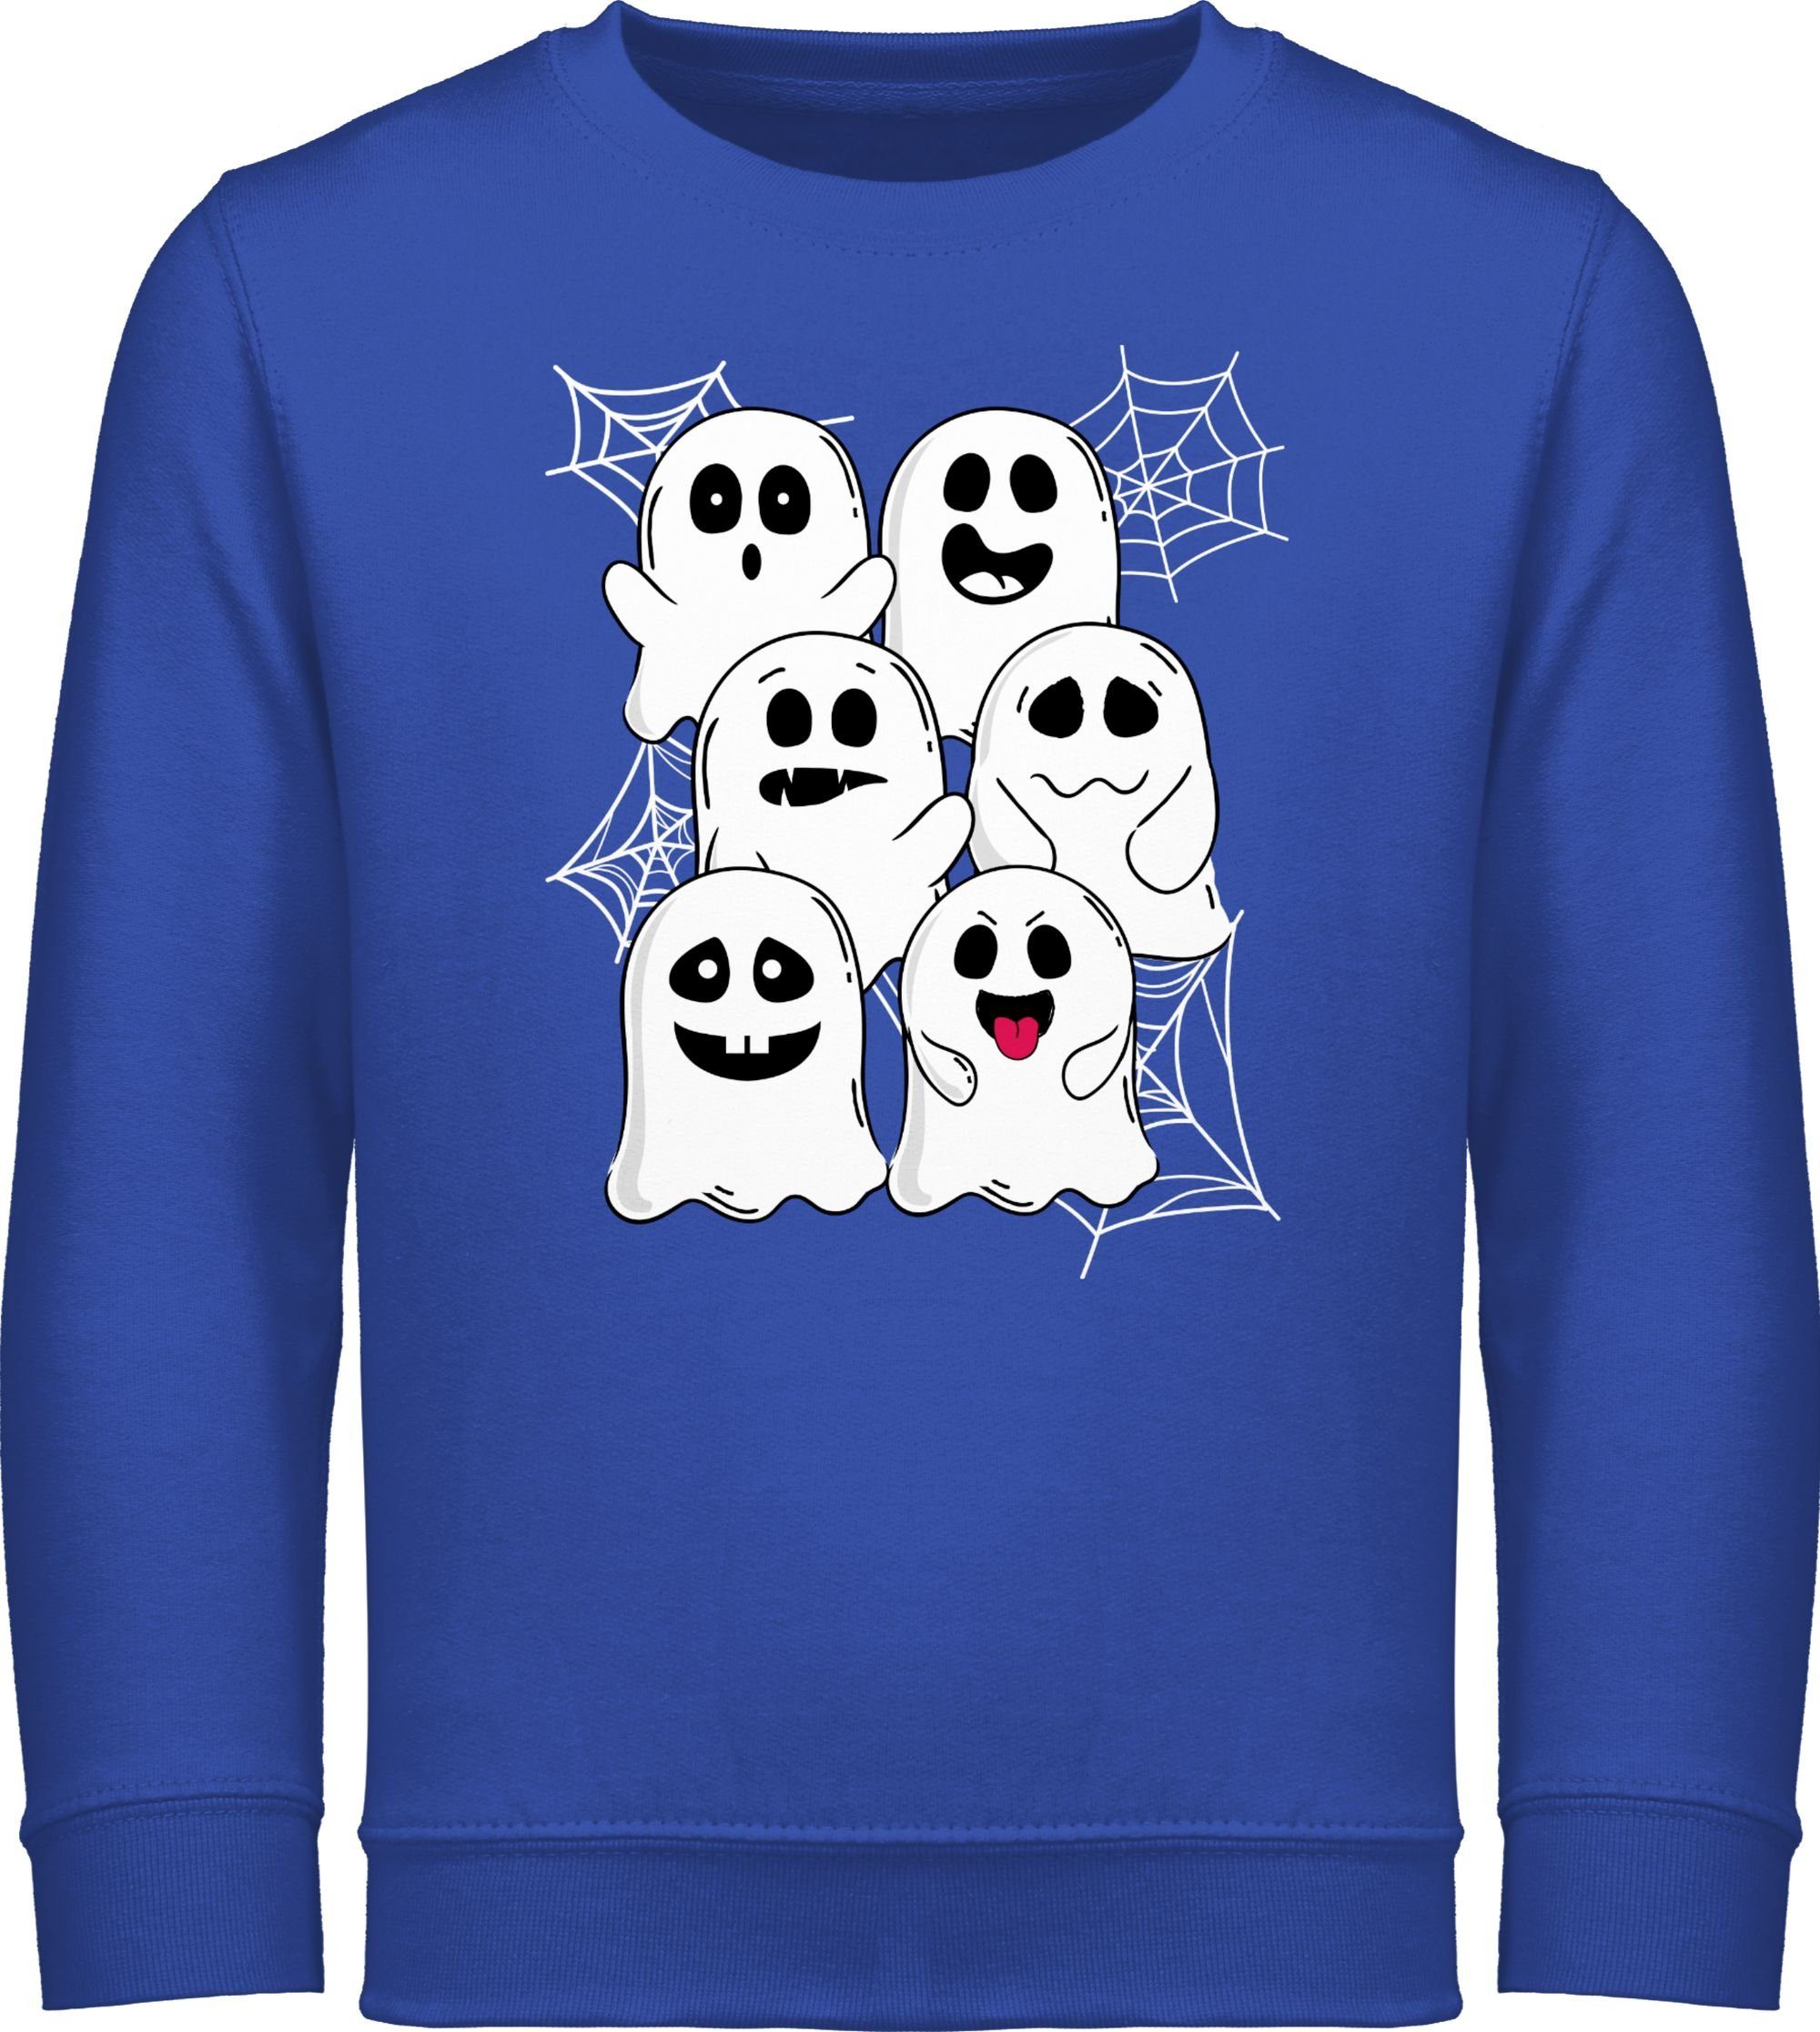 Shirtracer Sweatshirt Lustige Geister Gespenster Geist Gespenst Halloween Kostüme für Kinder 3 Royalblau